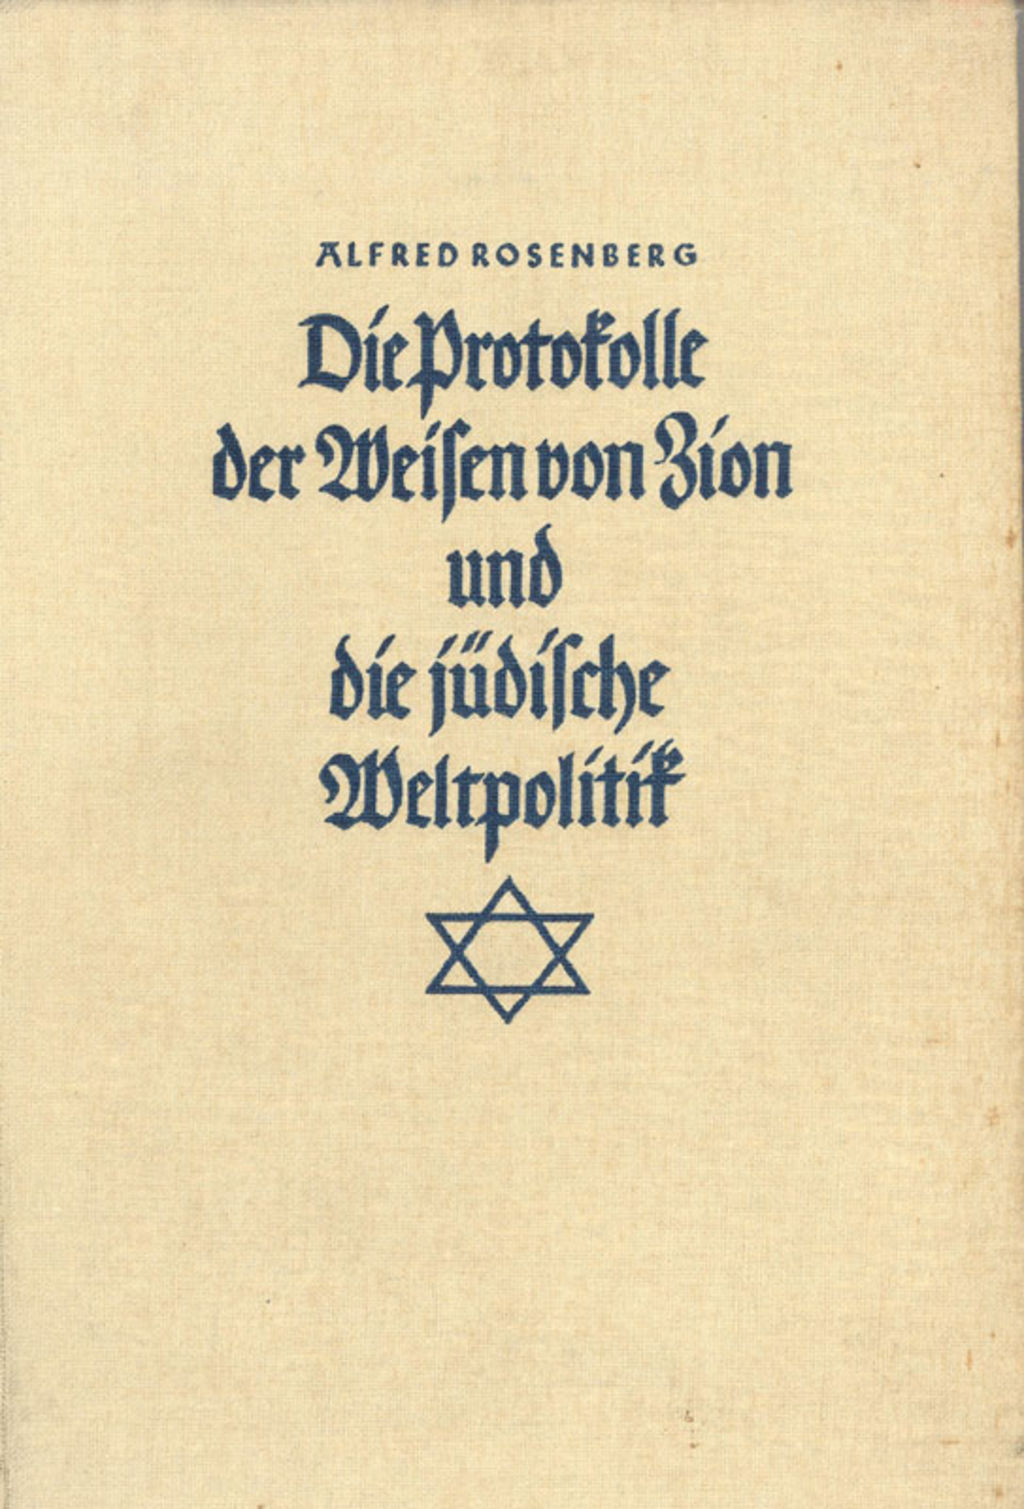 Exponat: Buch: Rosenberg, Alfred "Die Protokolle der Weisen von Zion und die jüdische Weltpolitik", 1941